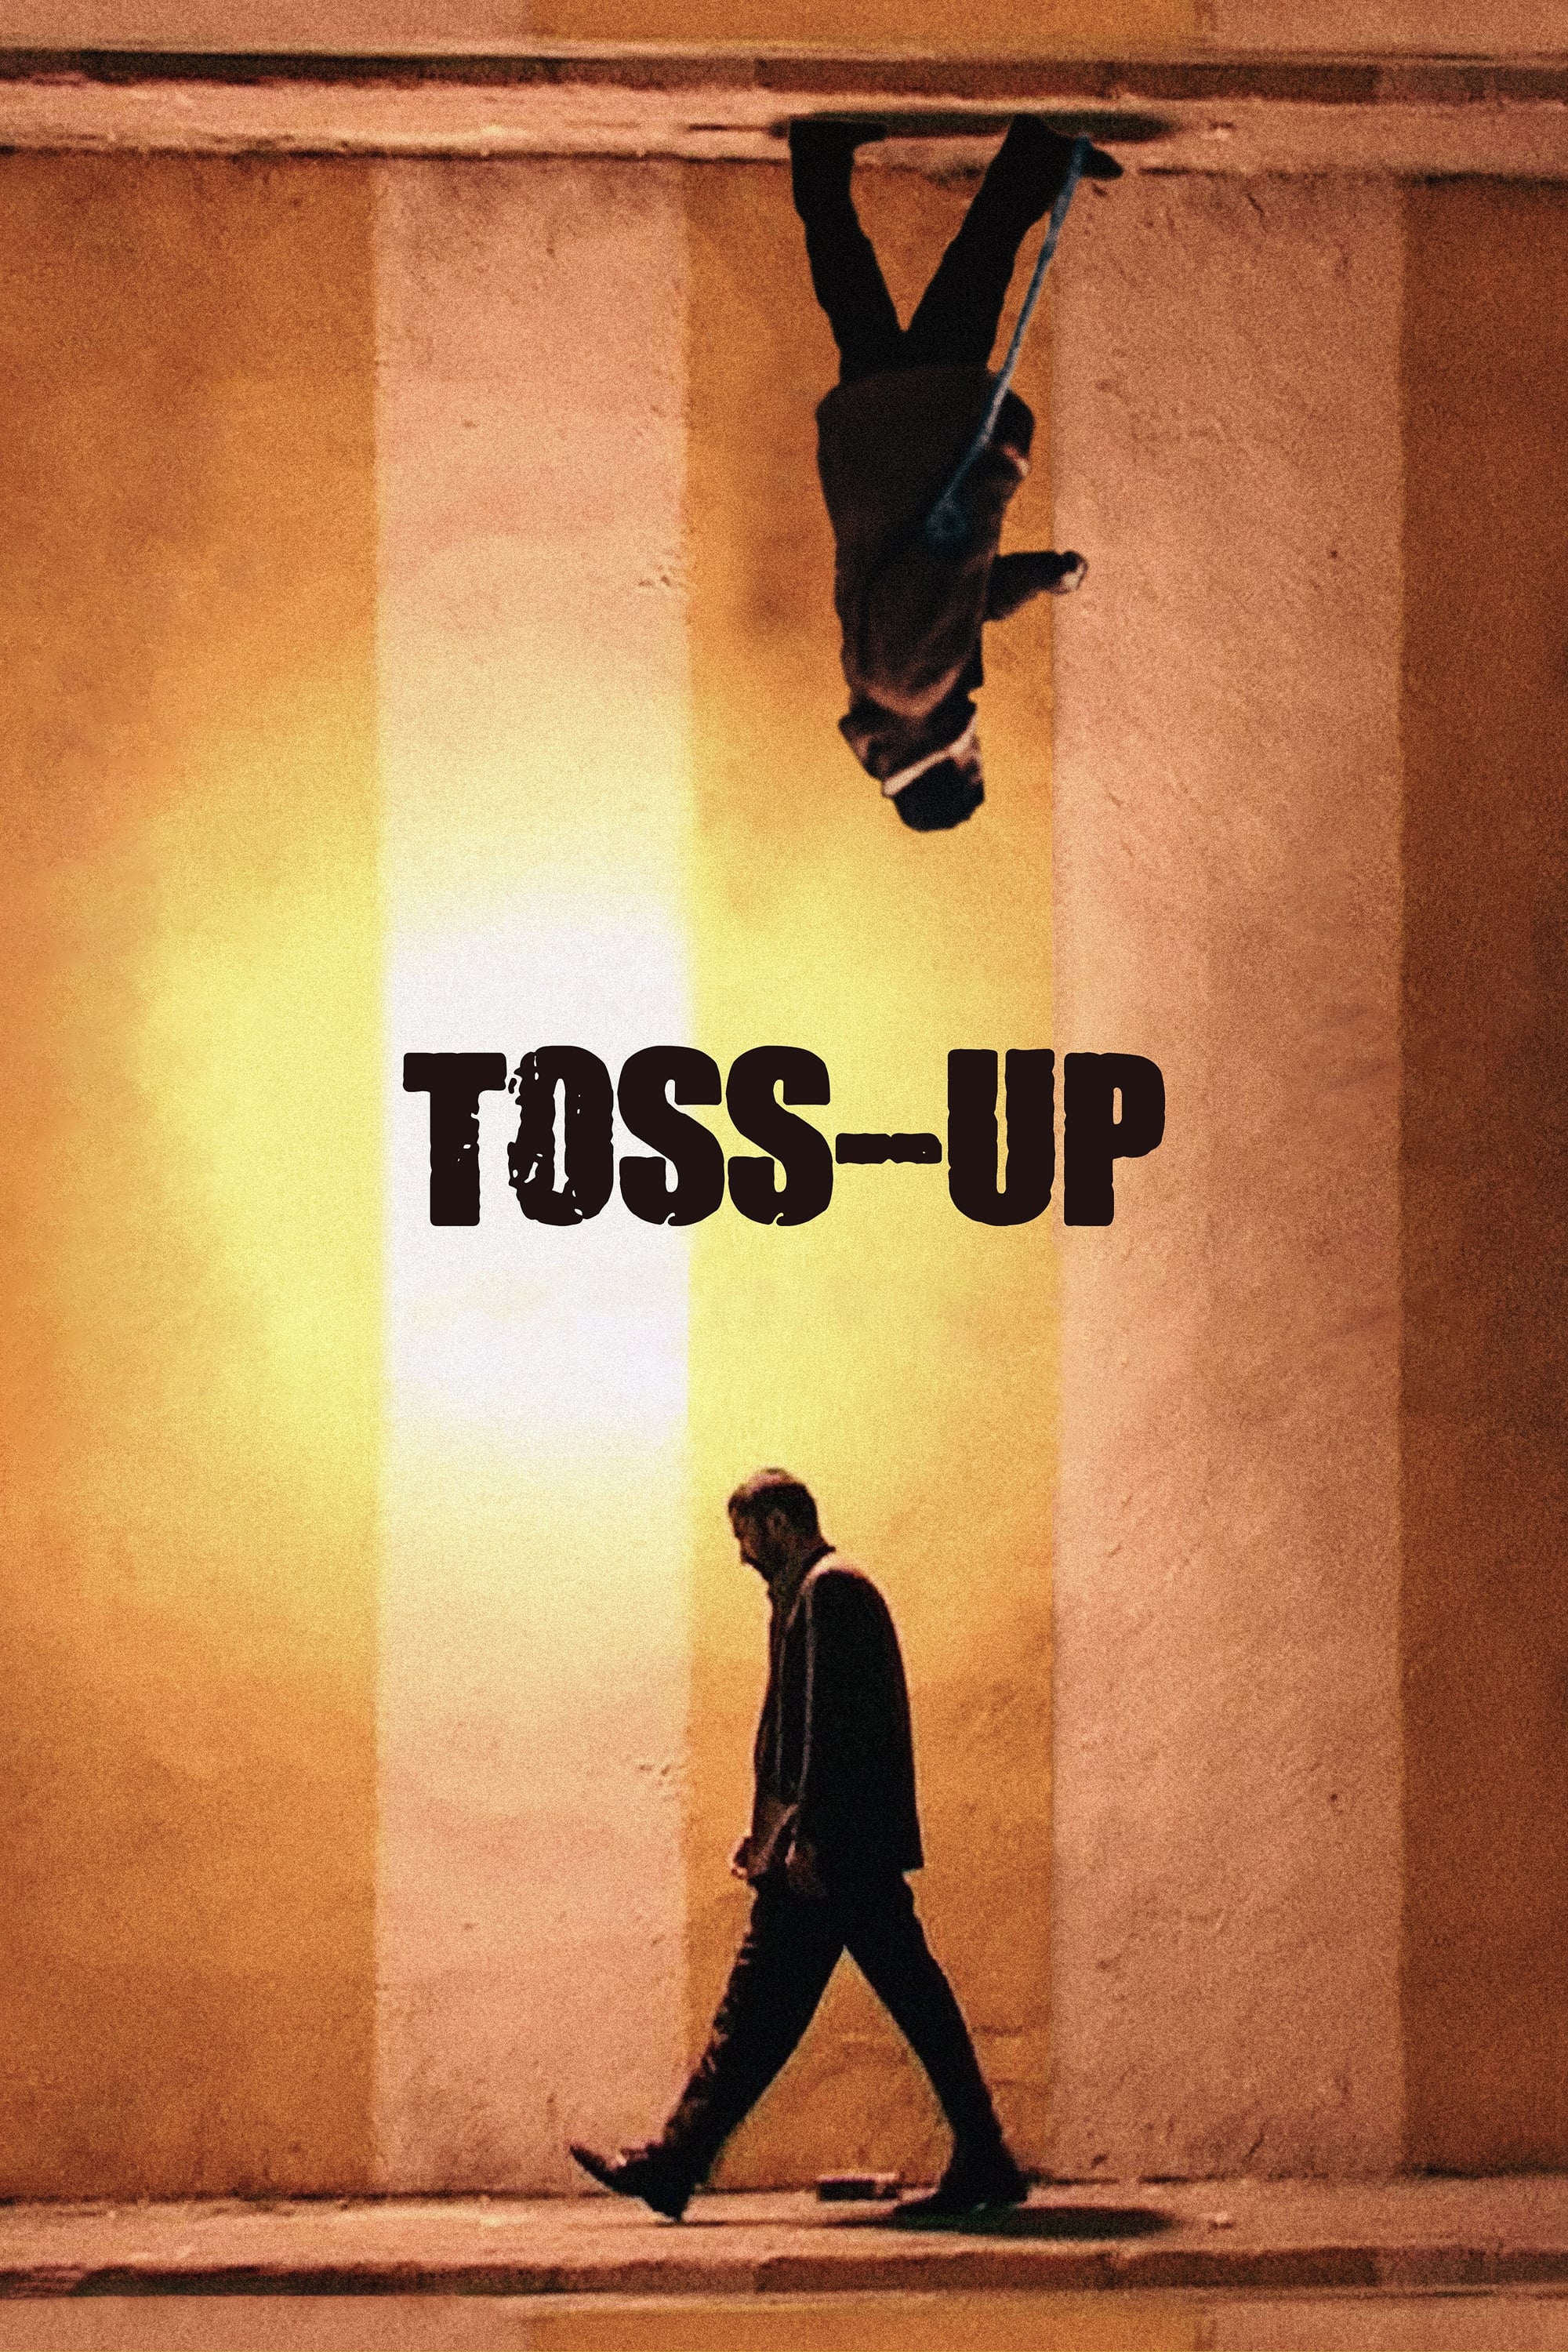 Toss-Up